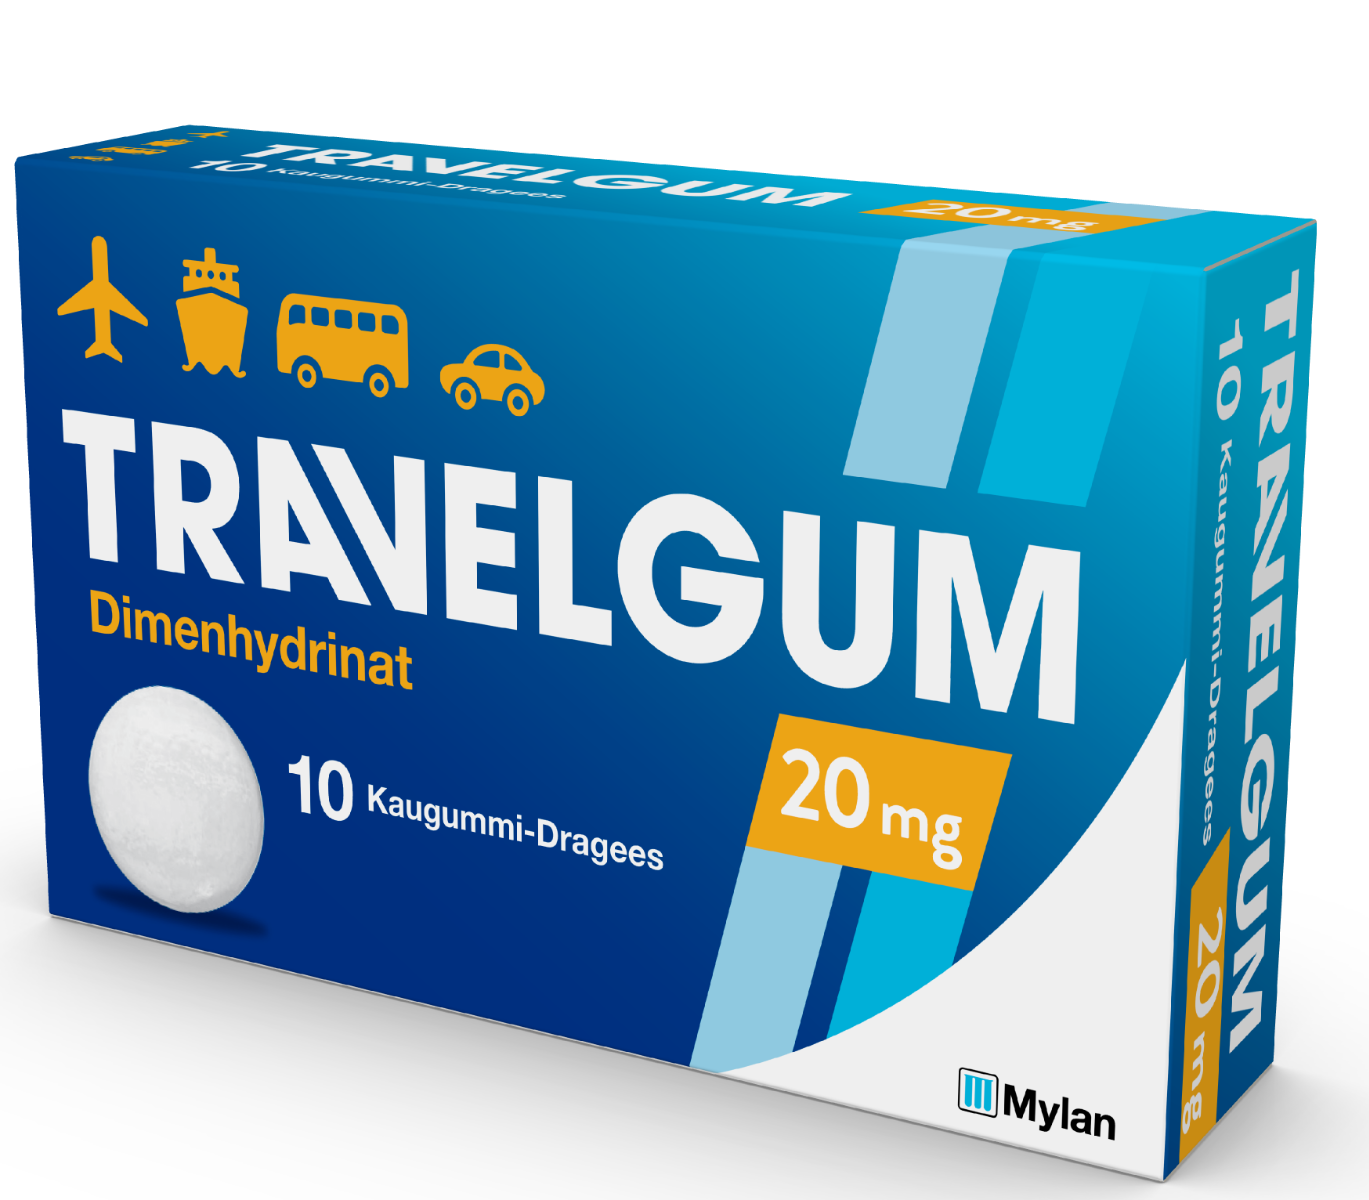 Travelgum  20 mg - Kaugummi-Dragees